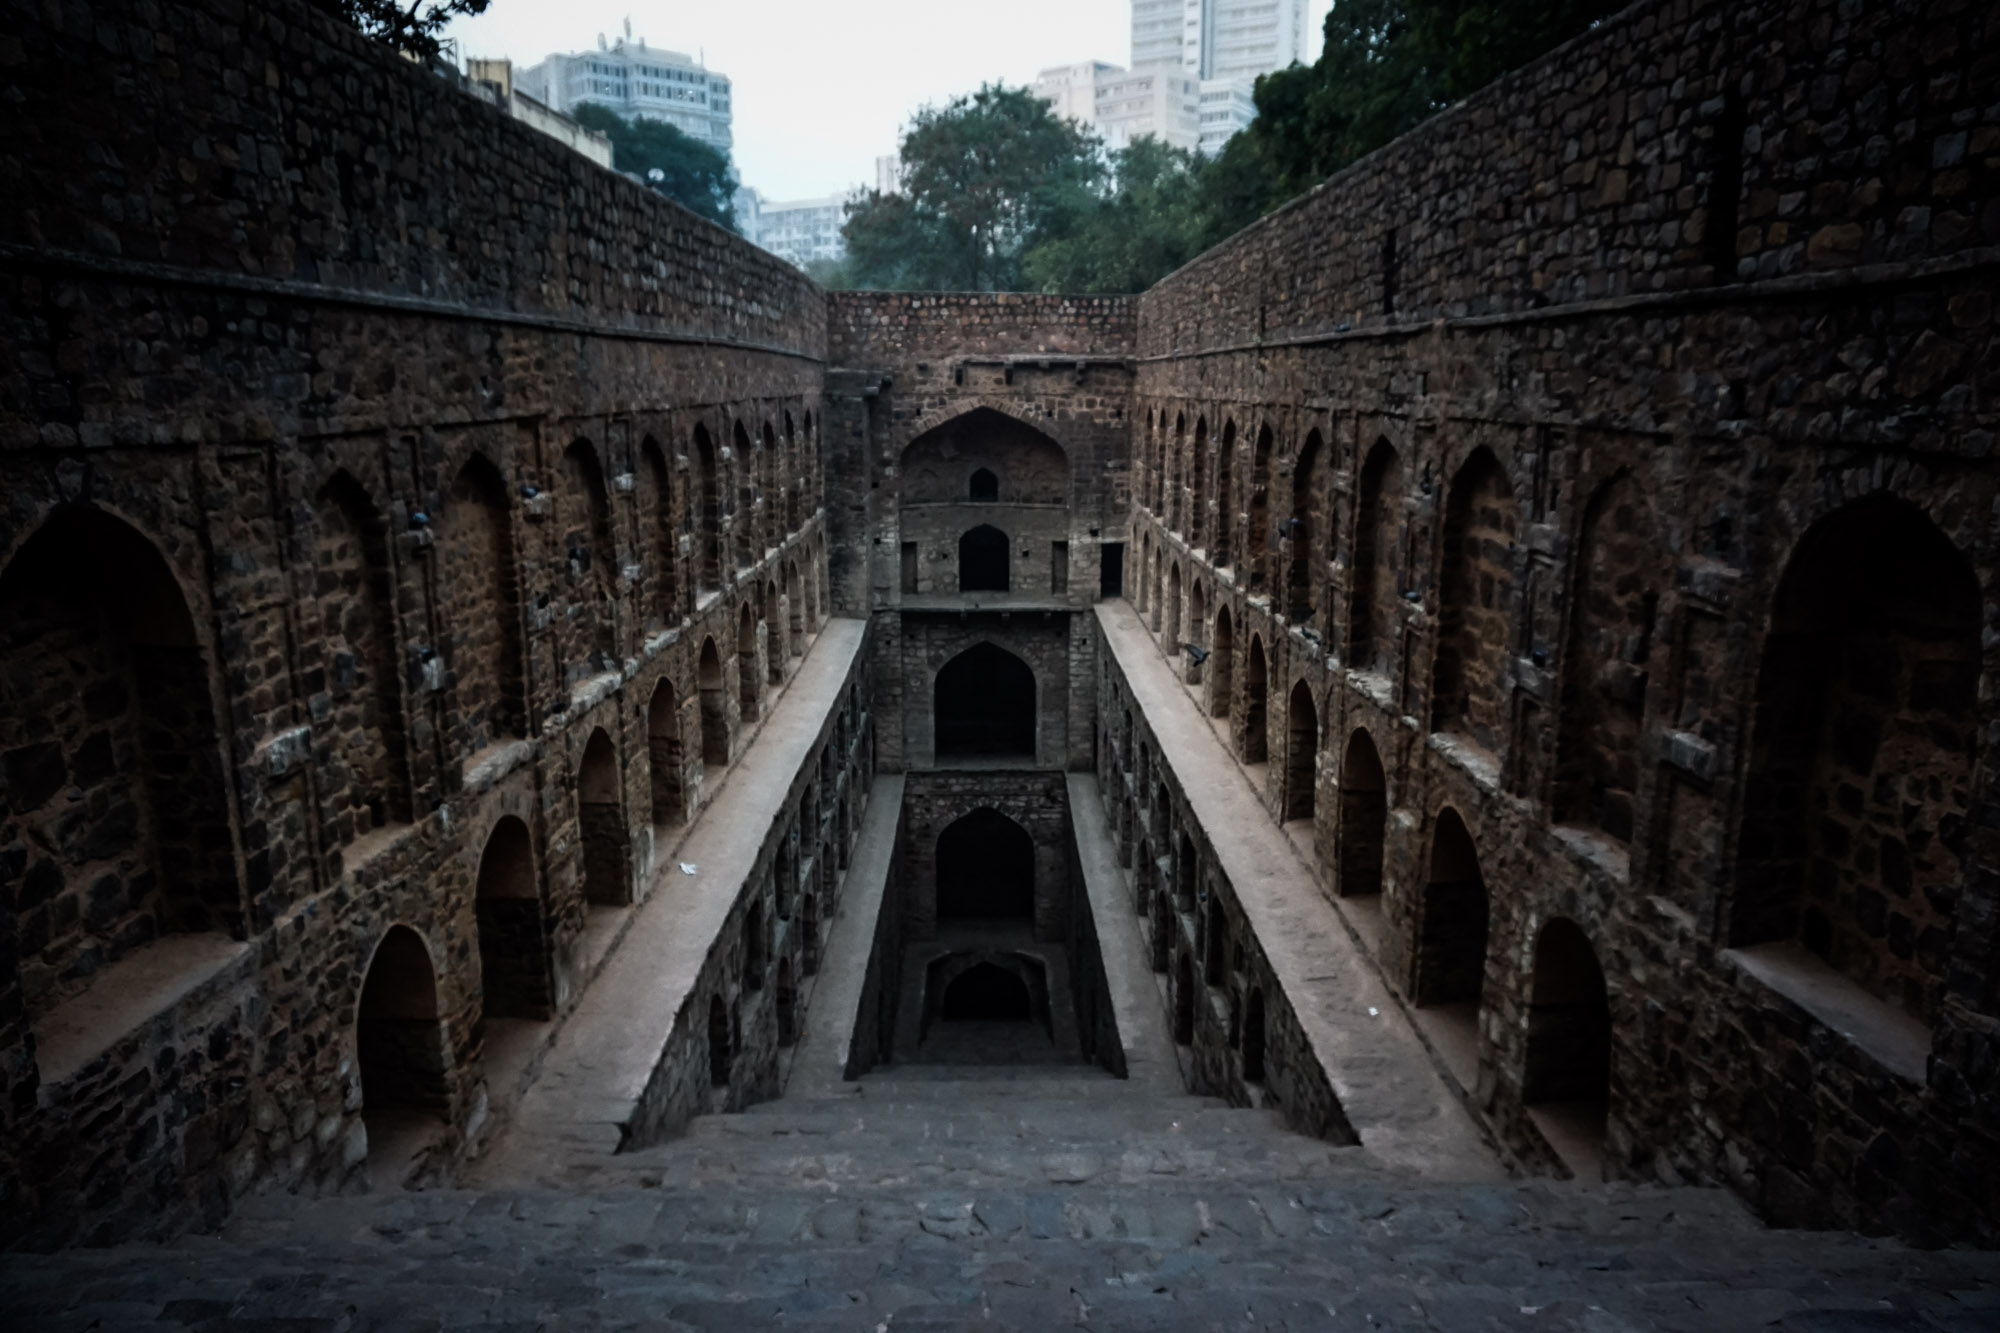 Agrasen Ki Baoli – A Haunted Destination in Delhi